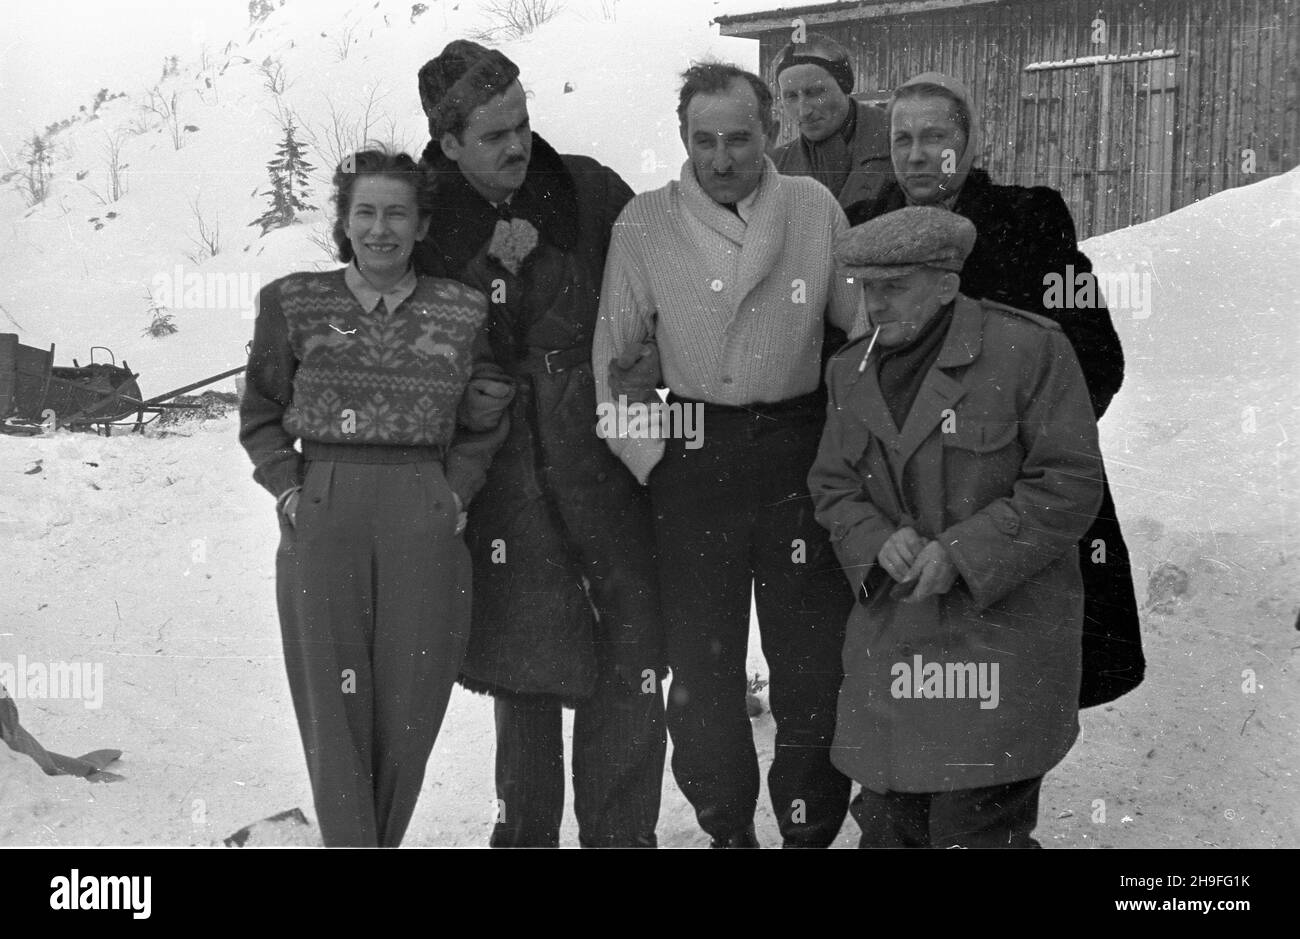 Karpacz, 1948-02. XXIII Narciarskie Mistrzostwa Polski (19-20 lutego).  bk  PAP      Karpacz, Feb. 1948. The 23rd Poland's Skiing Championship (February 19-20).   bk  PAP Stock Photo